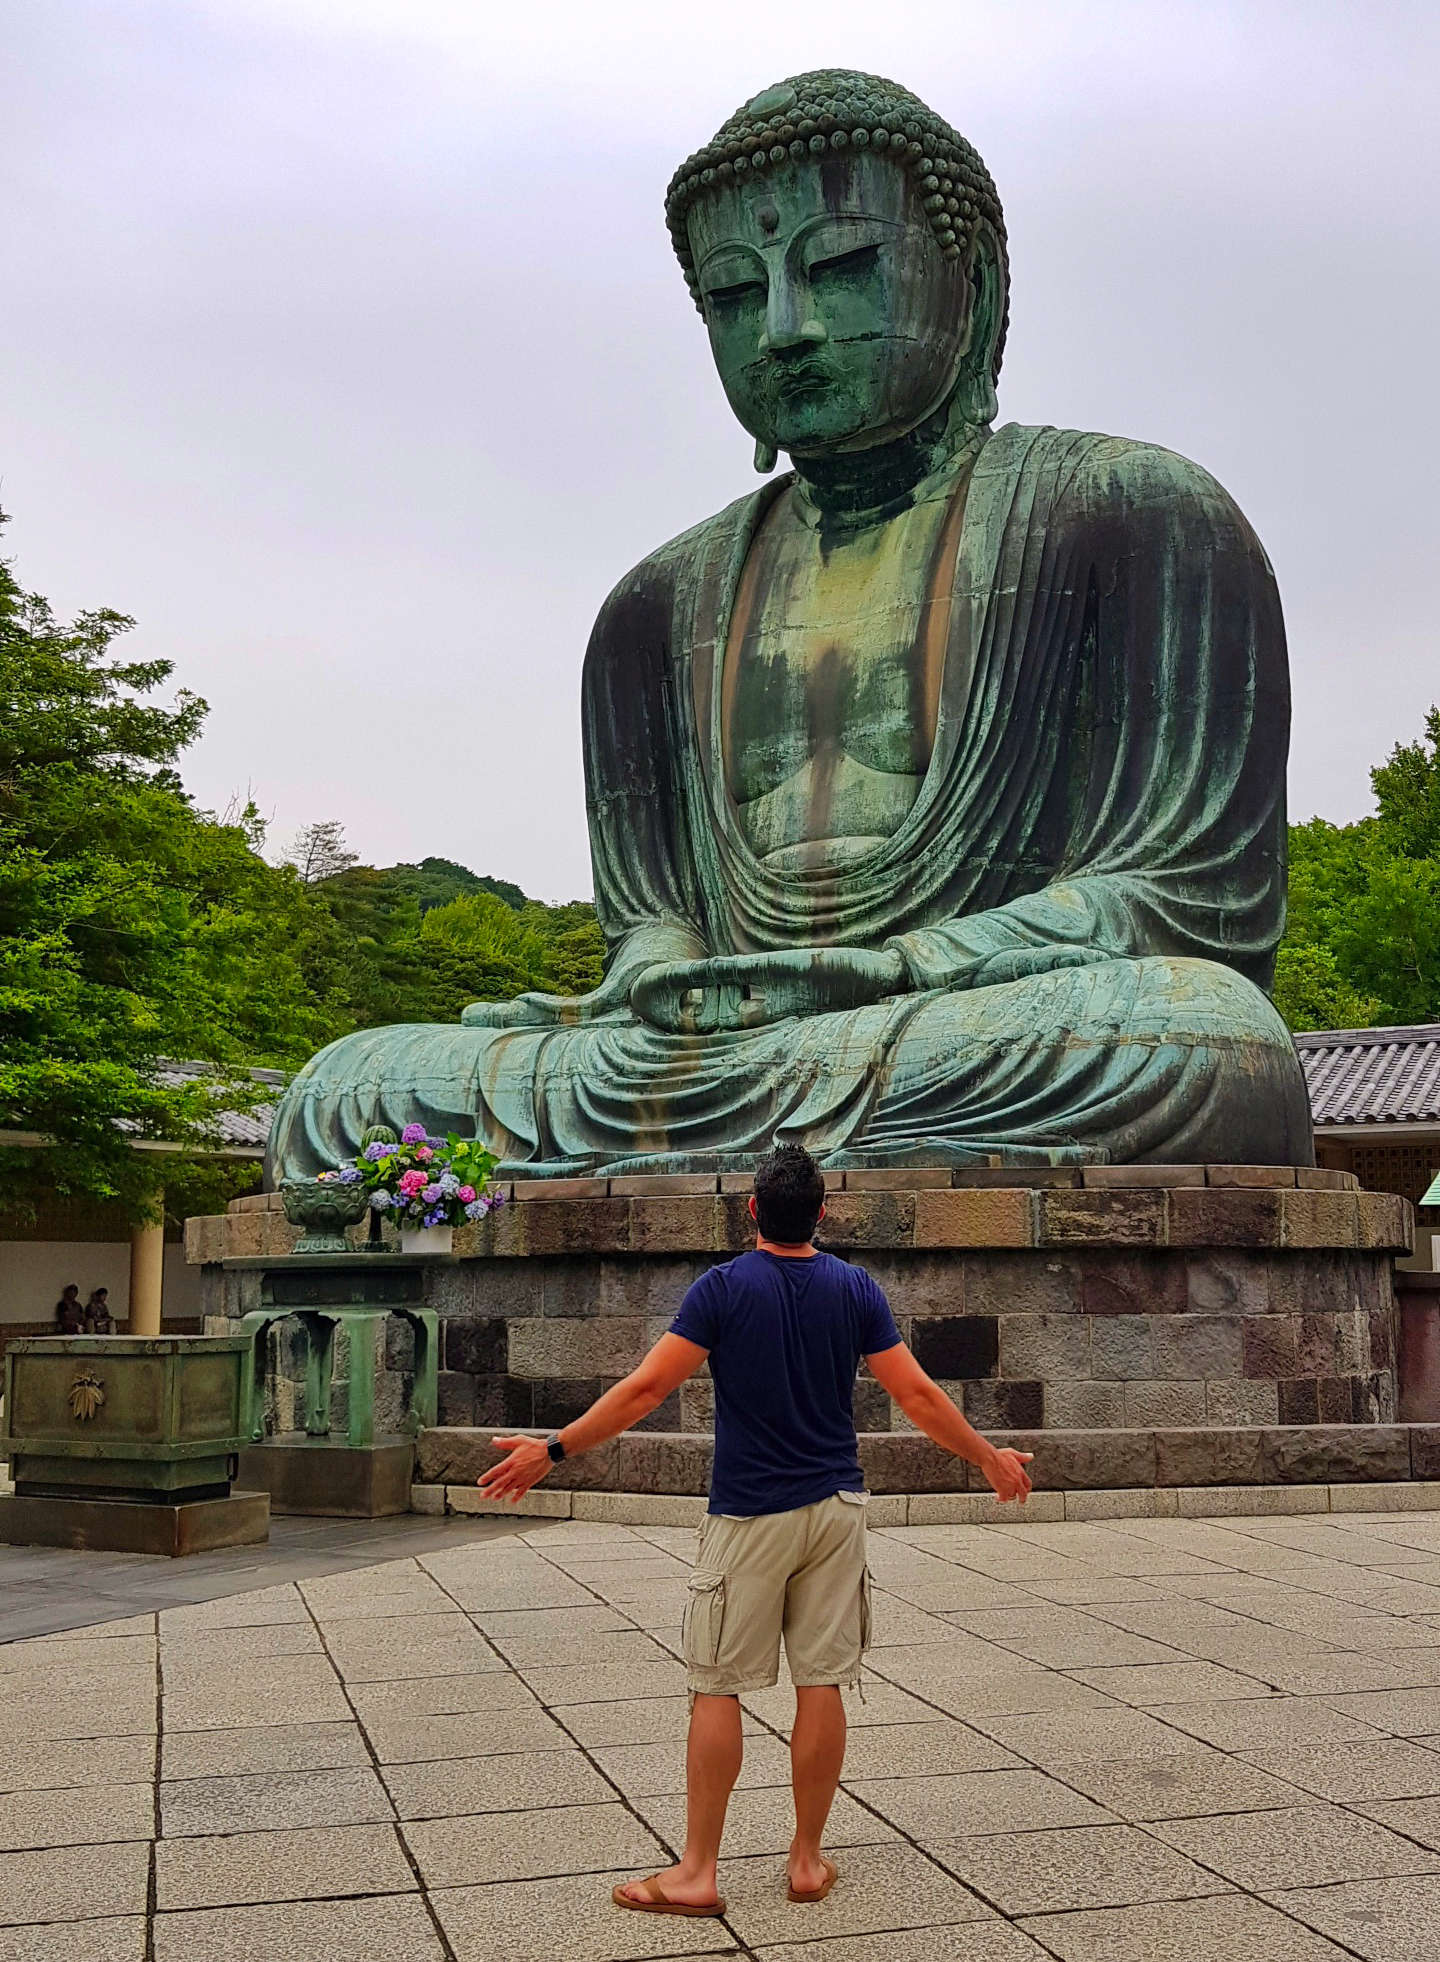 Buda de Kamakura - Tokio / Tokyo - Viajar a Japón - ruta por Japón en dos semanas